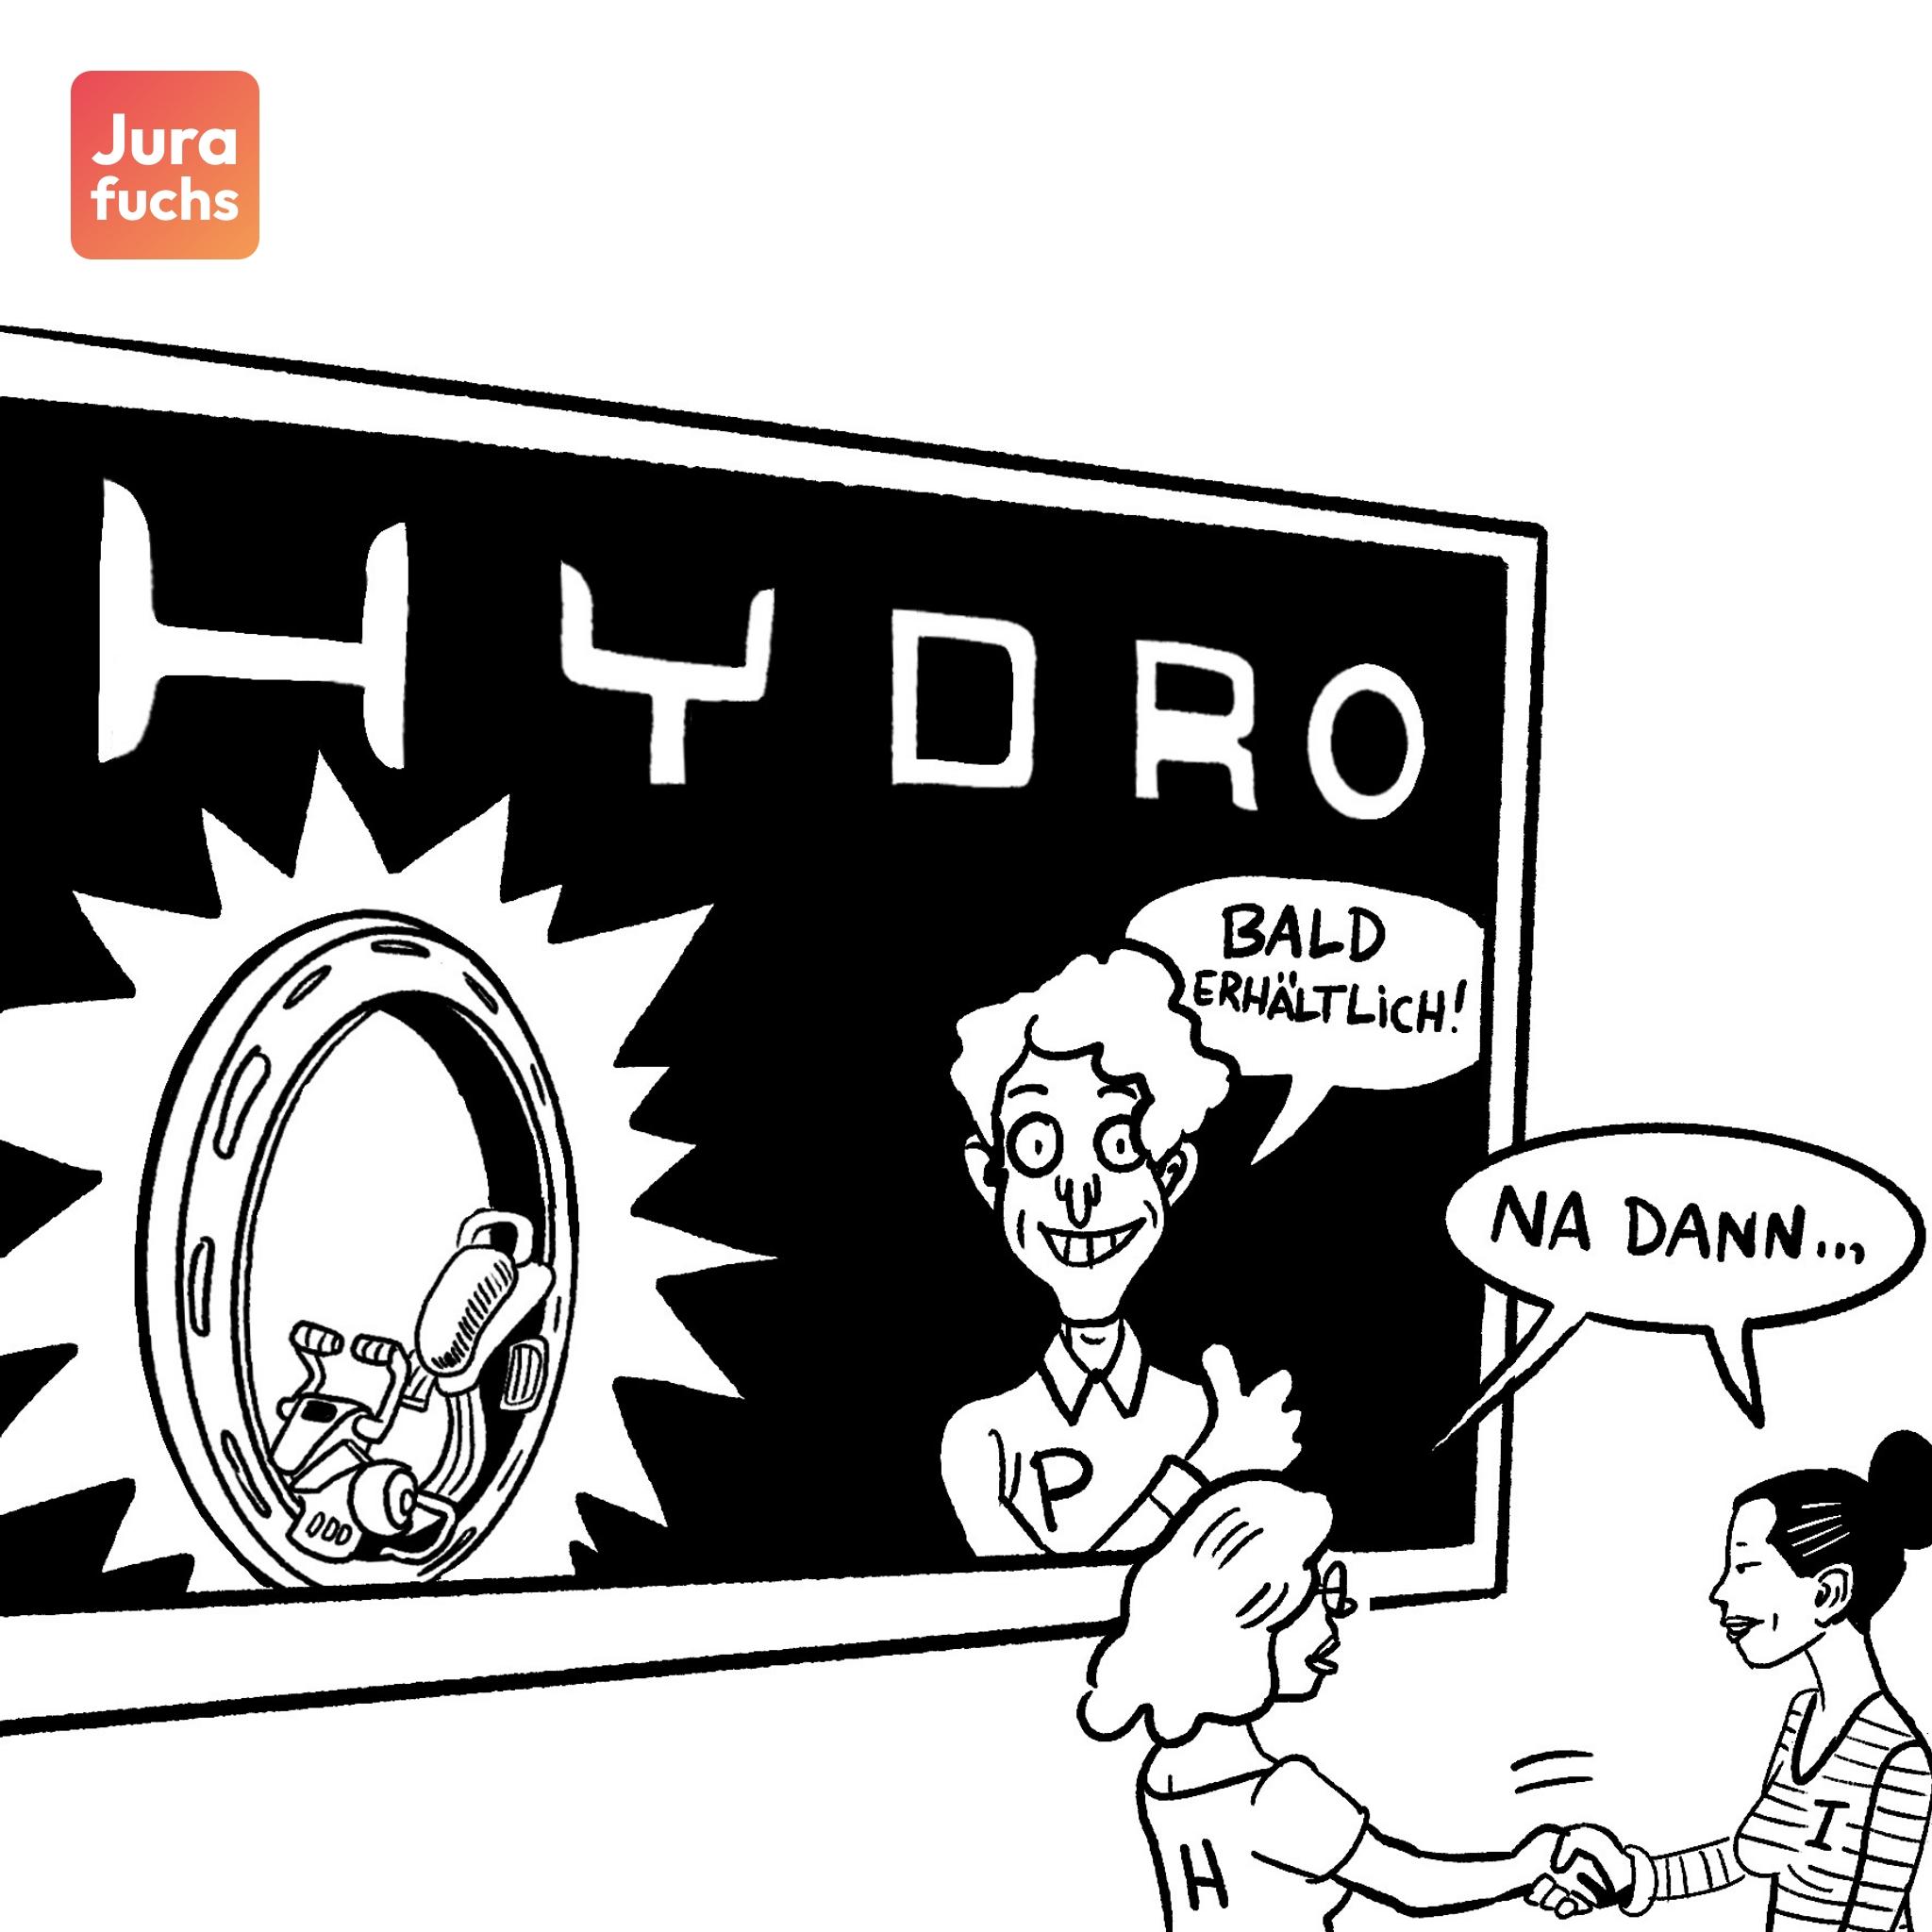 Jurafuchs-Illustration zum Fall zur Anfänglichen Unmöglichkeit und Vertretenmüssen (Beschaffungsrisiko): Zwei Frauen schütteln ihre Hände vor einem Plakat auf dem "Hydro" steht. Sie schließen einen Vertrag über ein wasserstoffbetriebenes Rad.